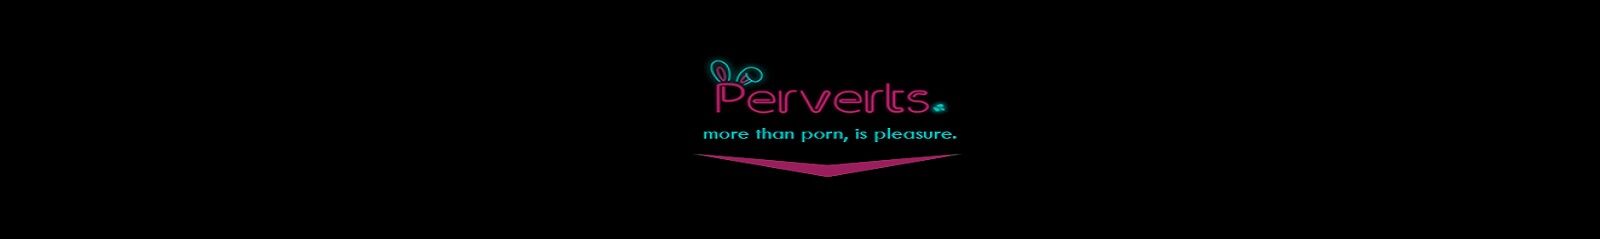 Perverts Lat